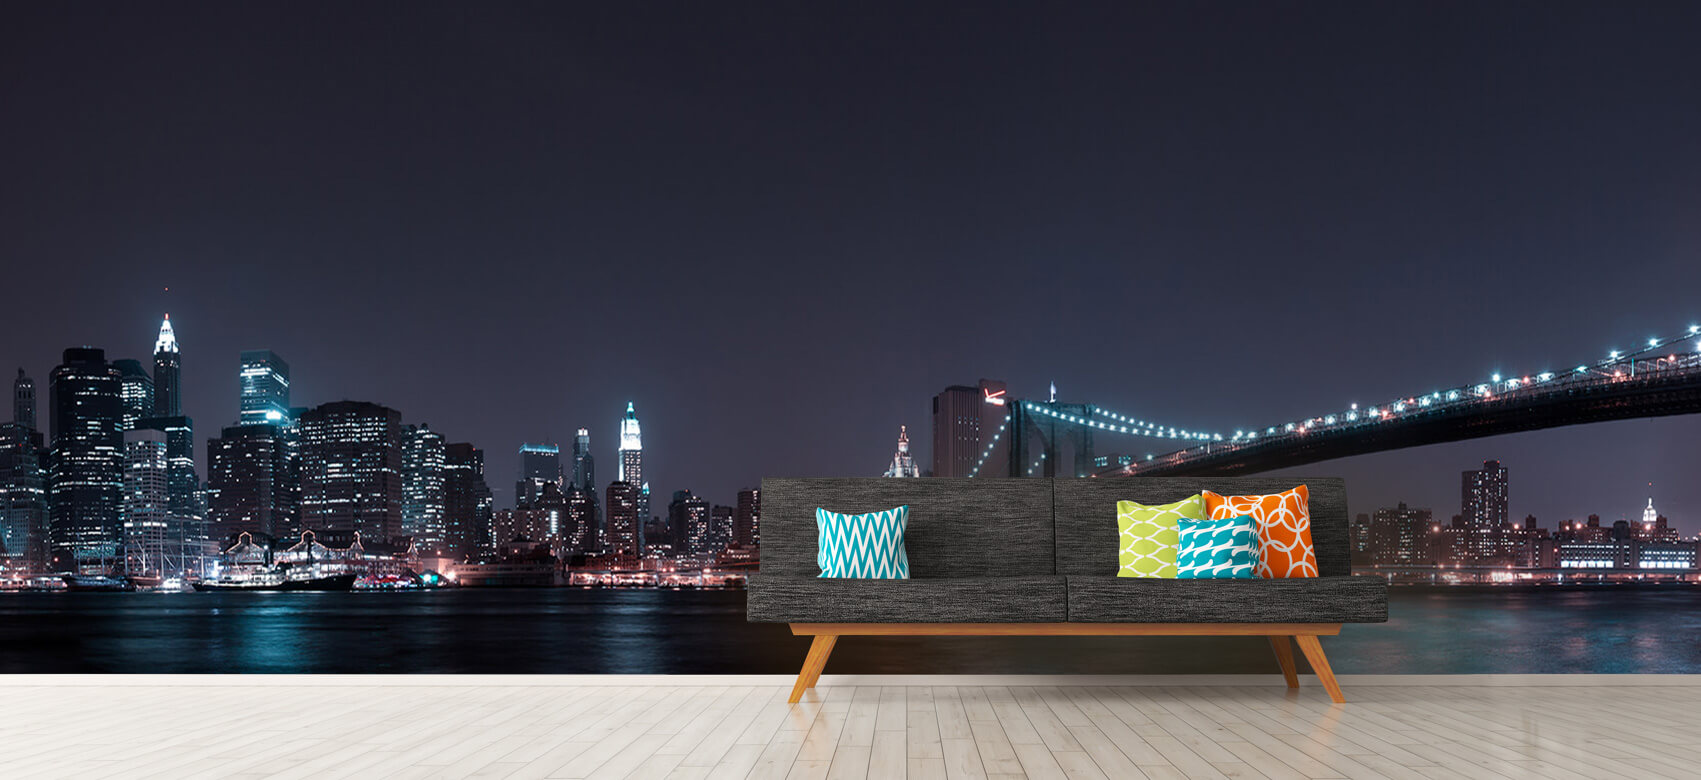 Nacht Papel pintado con El horizonte de Manhattan y el puente de Brooklyn - Habitación de adolescentes 12